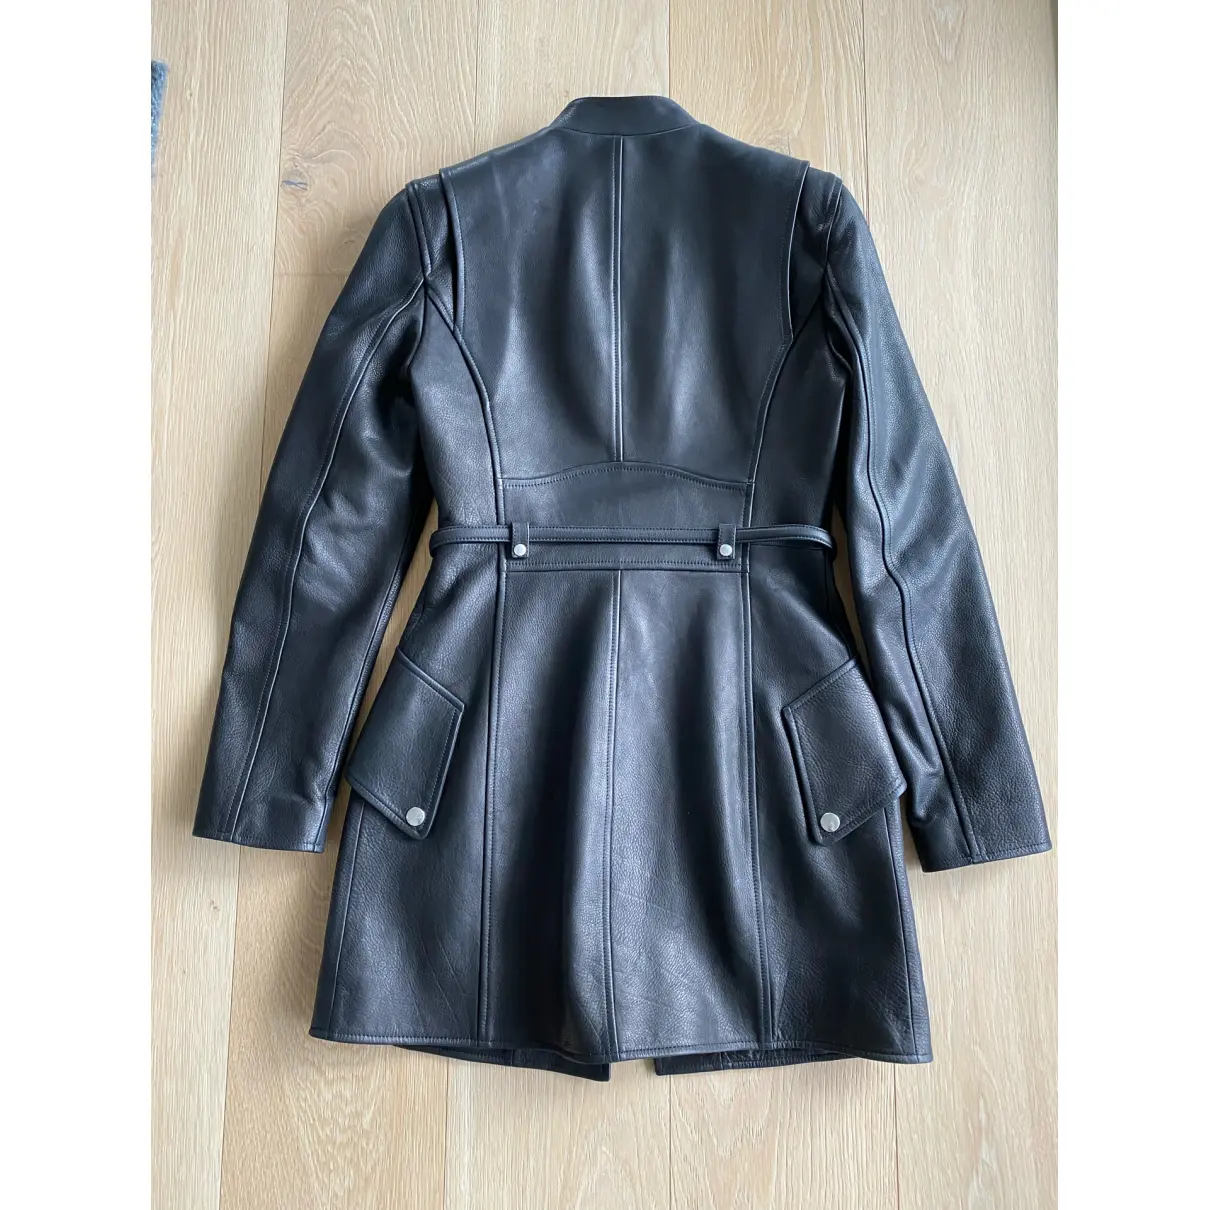 Buy Alexander Wang Leather coat online